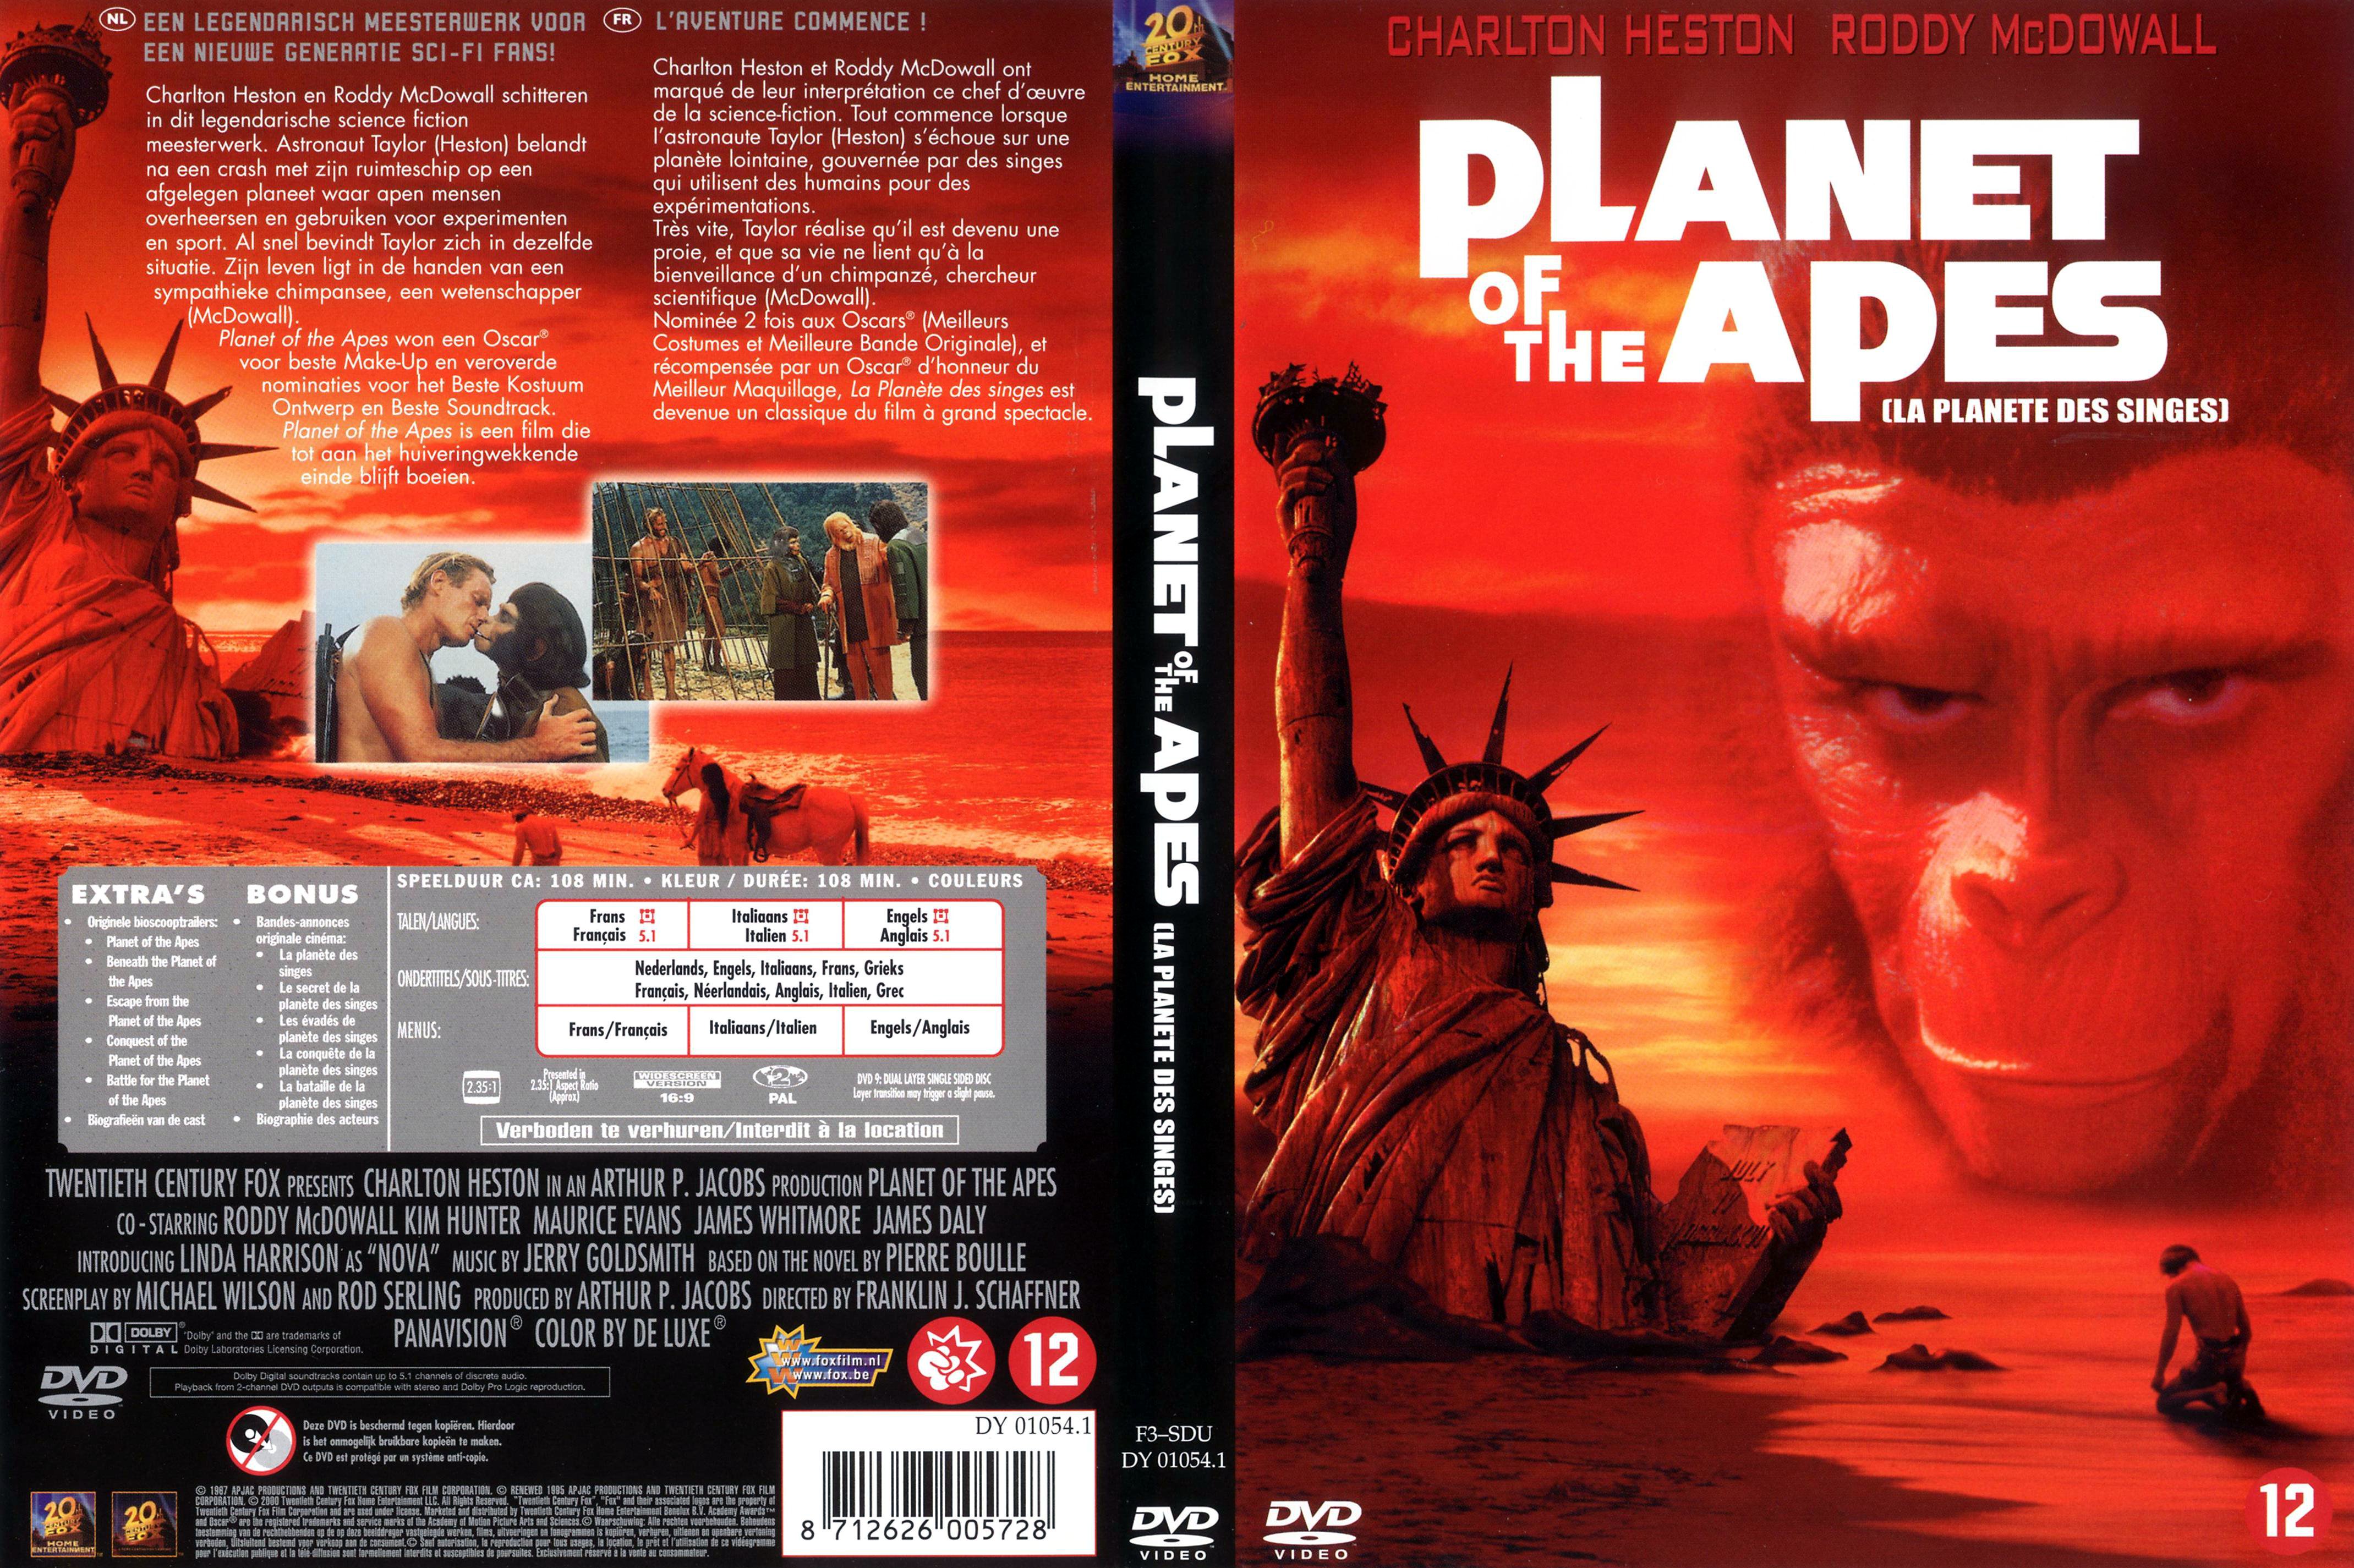 Jaquette DVD La planete des singes 1967 v3